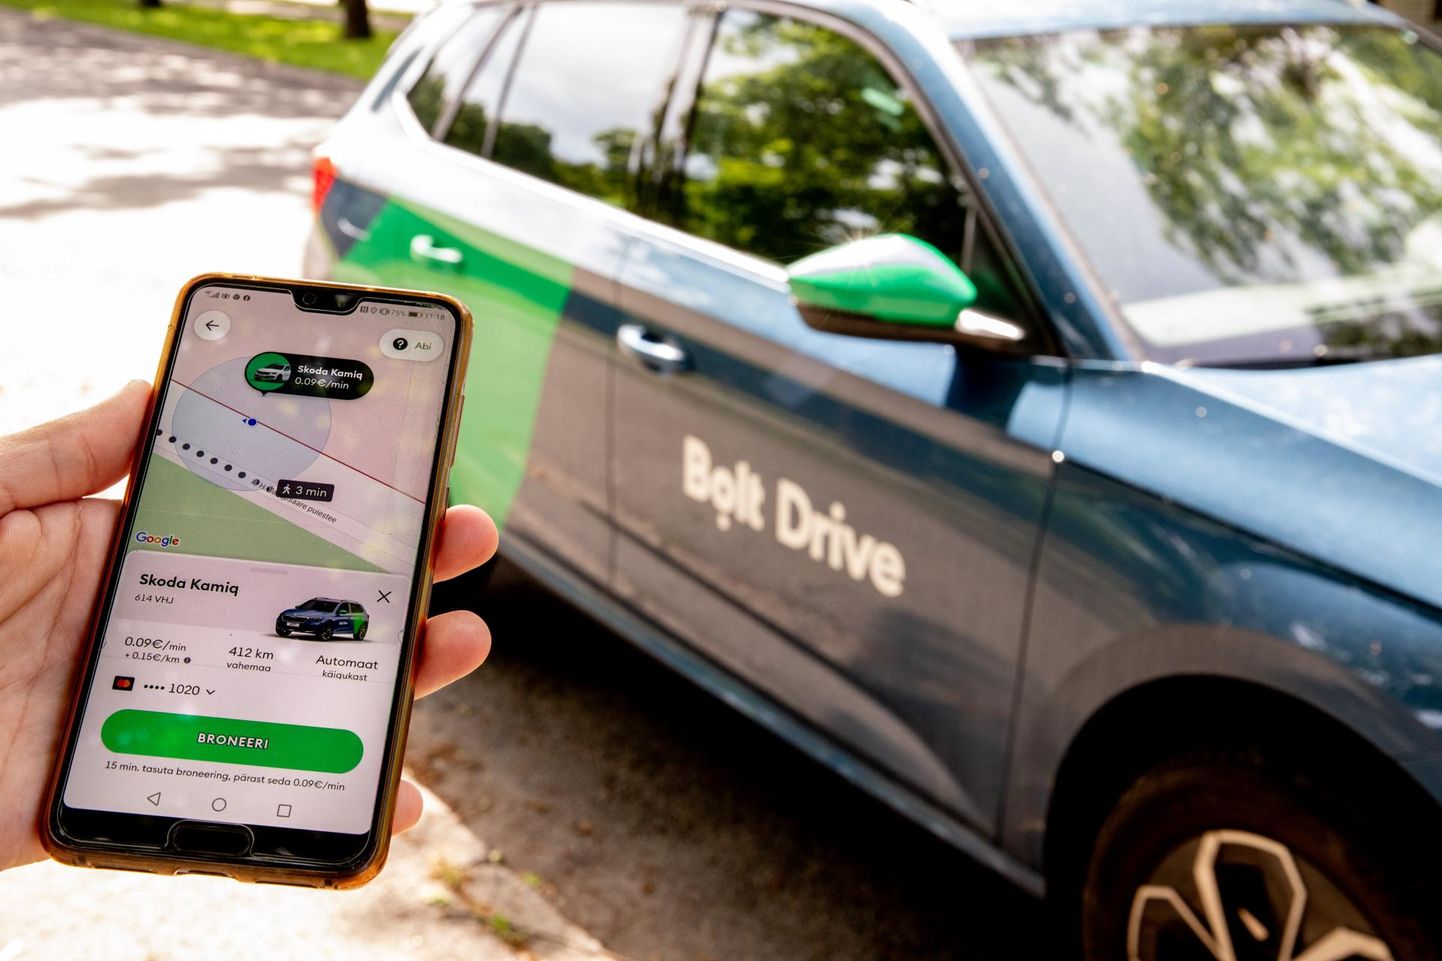 Для того, чтобы взять в аренду автомобиль Bolt Drive требуется приложение и водительское удостоверение для разблокировки дверей автомобиля. В приложении содержится вся информация, необходимая для использования автомобиля.